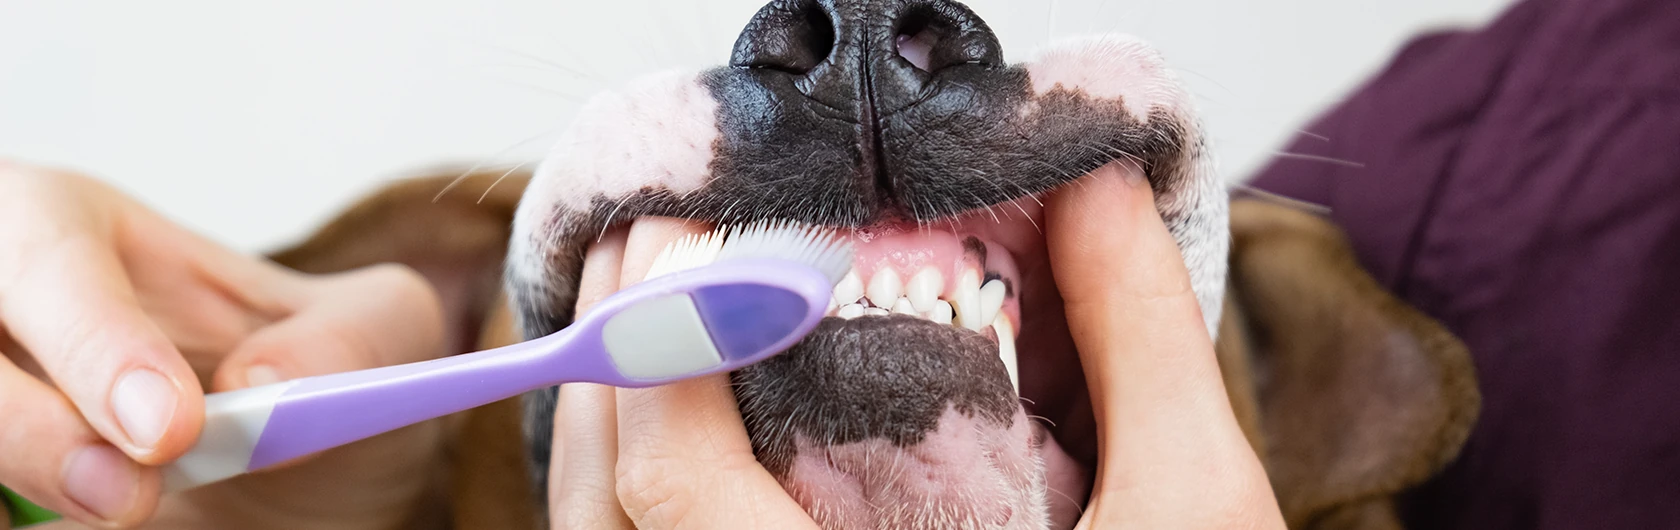 Cuidado-en-la-dentadura-de-perros-y-comida-para-perros-de-calidad-nutribon